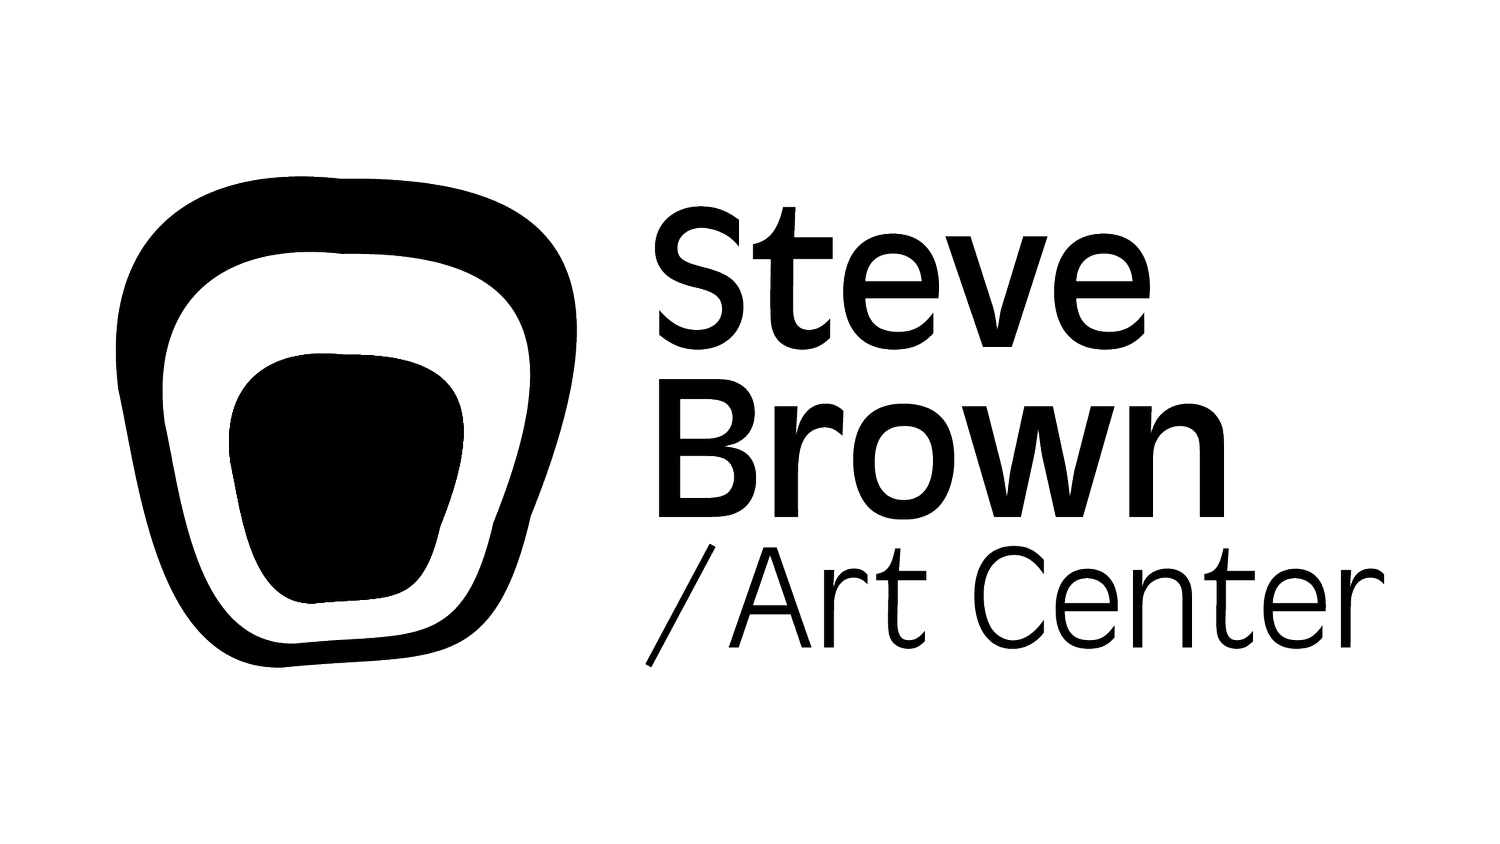 Steve Brown Art Center